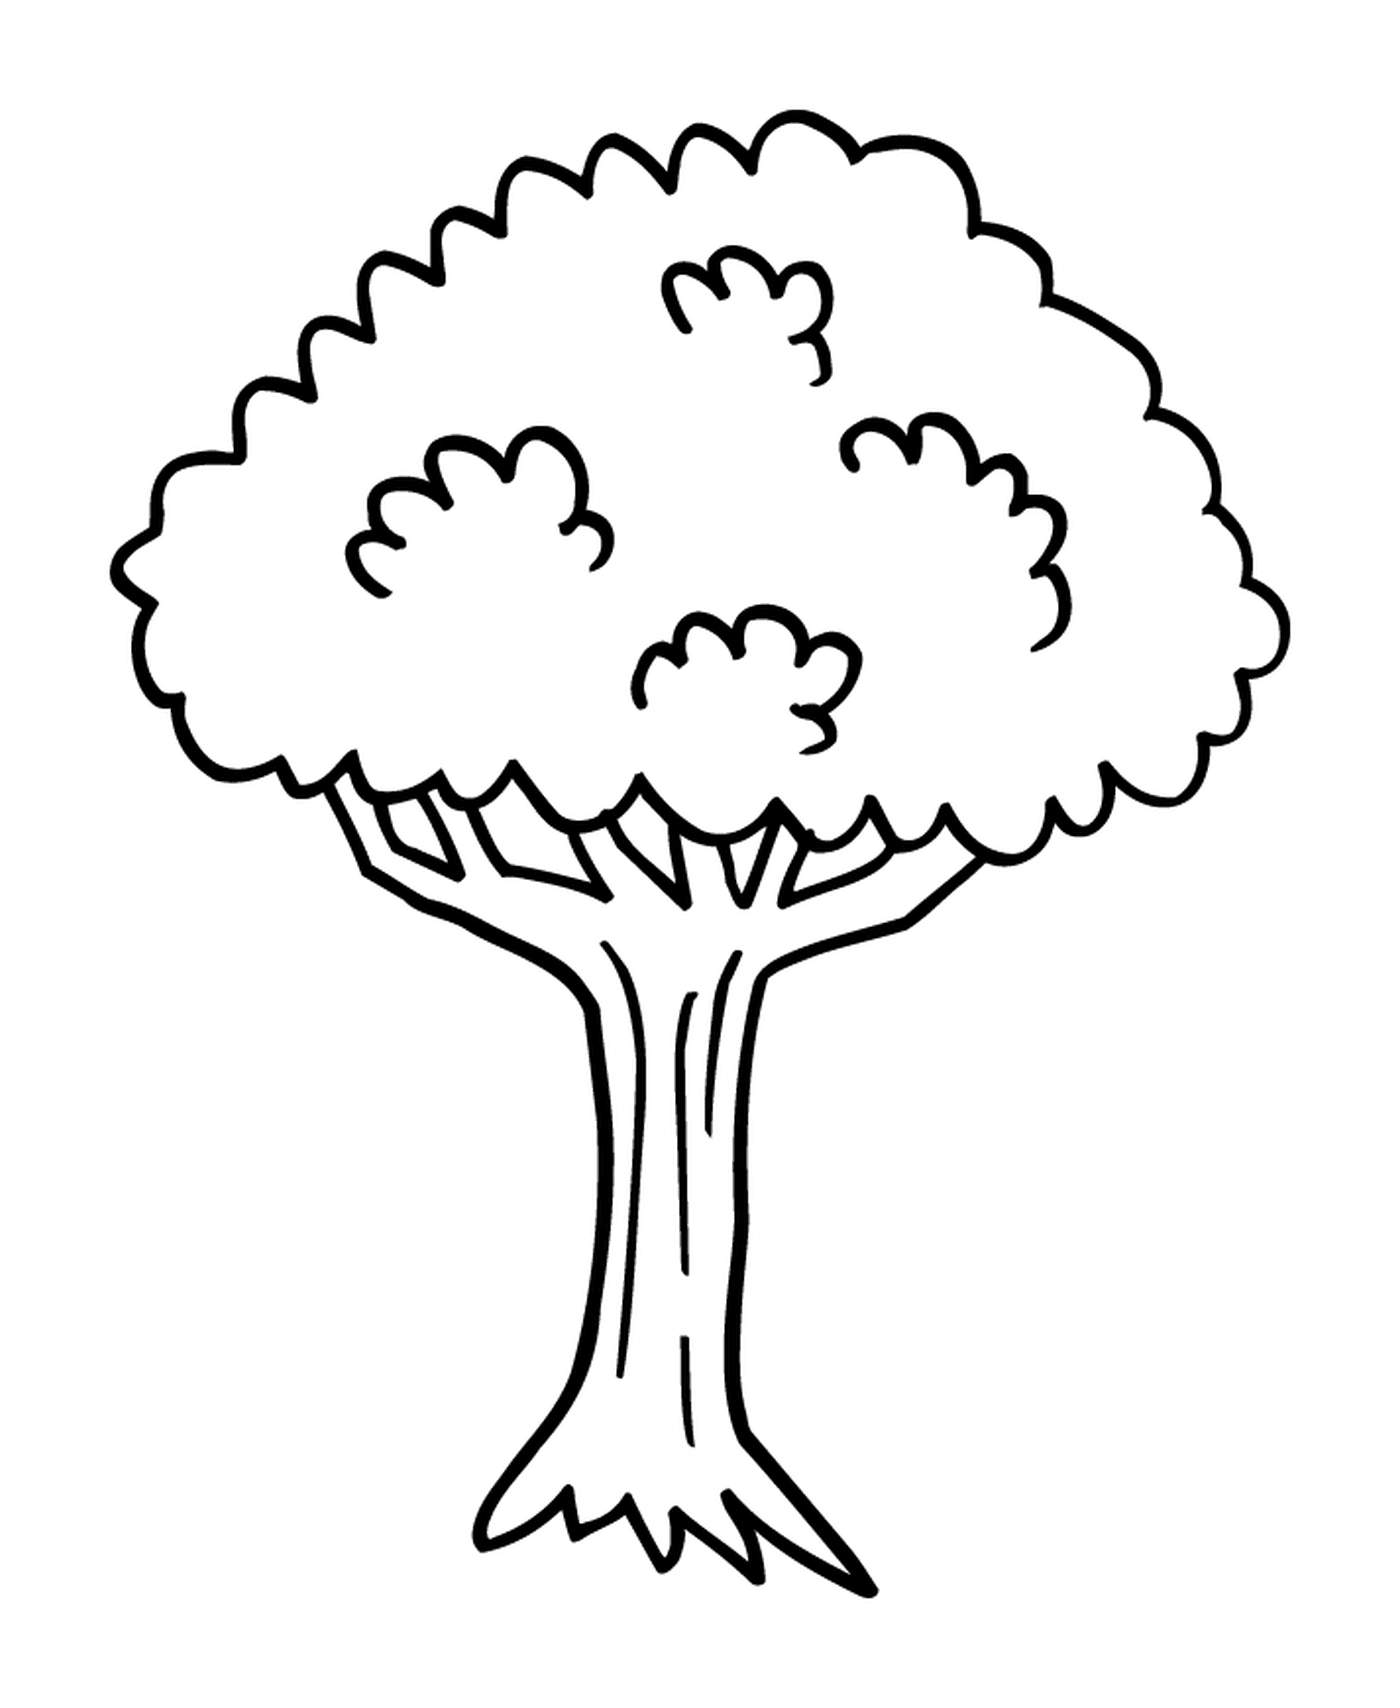  Ein Baum 